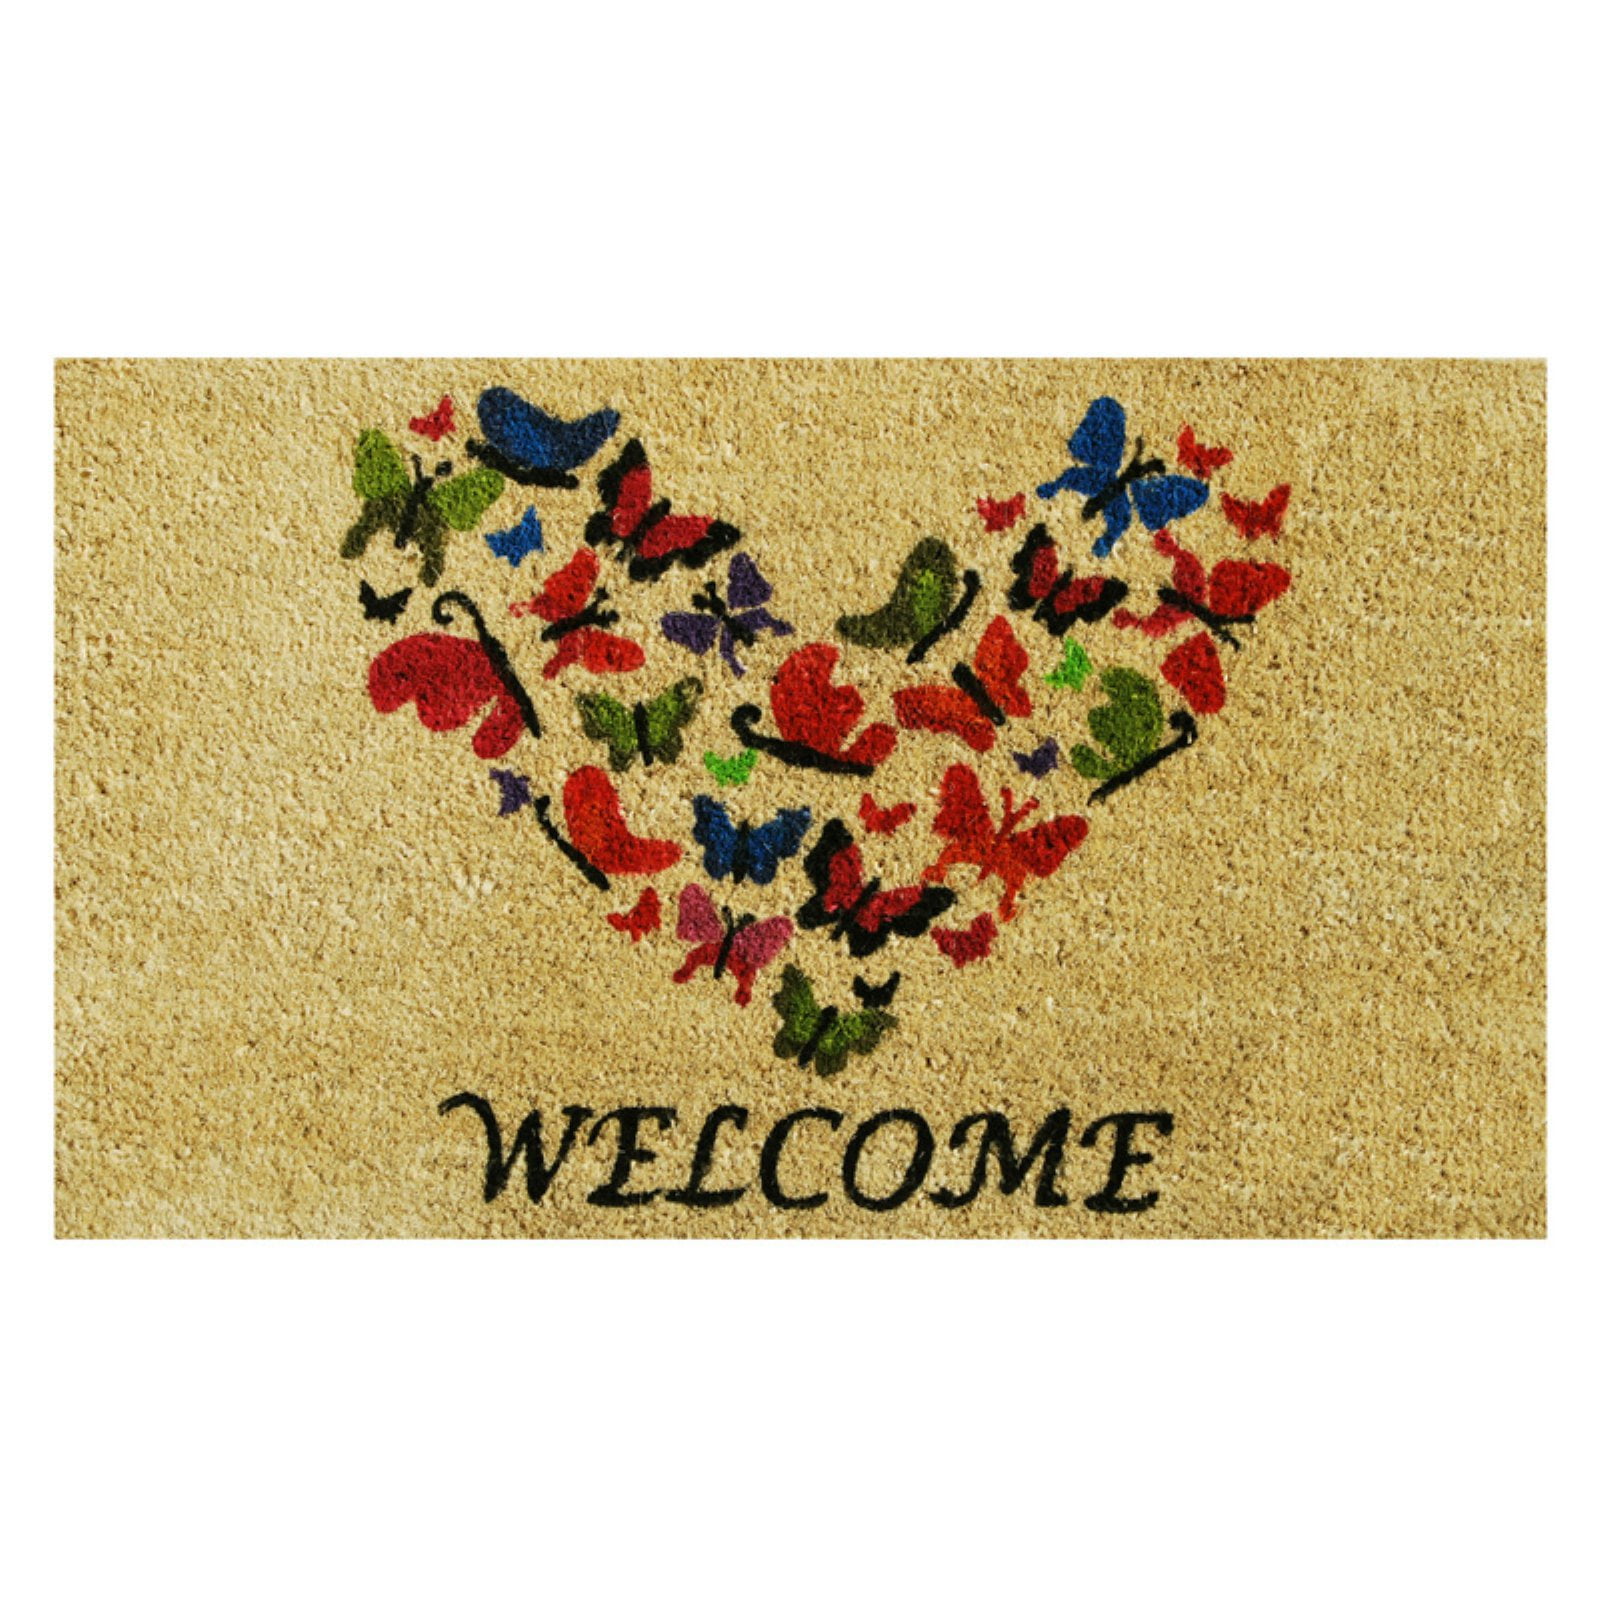 Calloway Mills Ladybug Welcome Outdoor Coir Doormat, 17